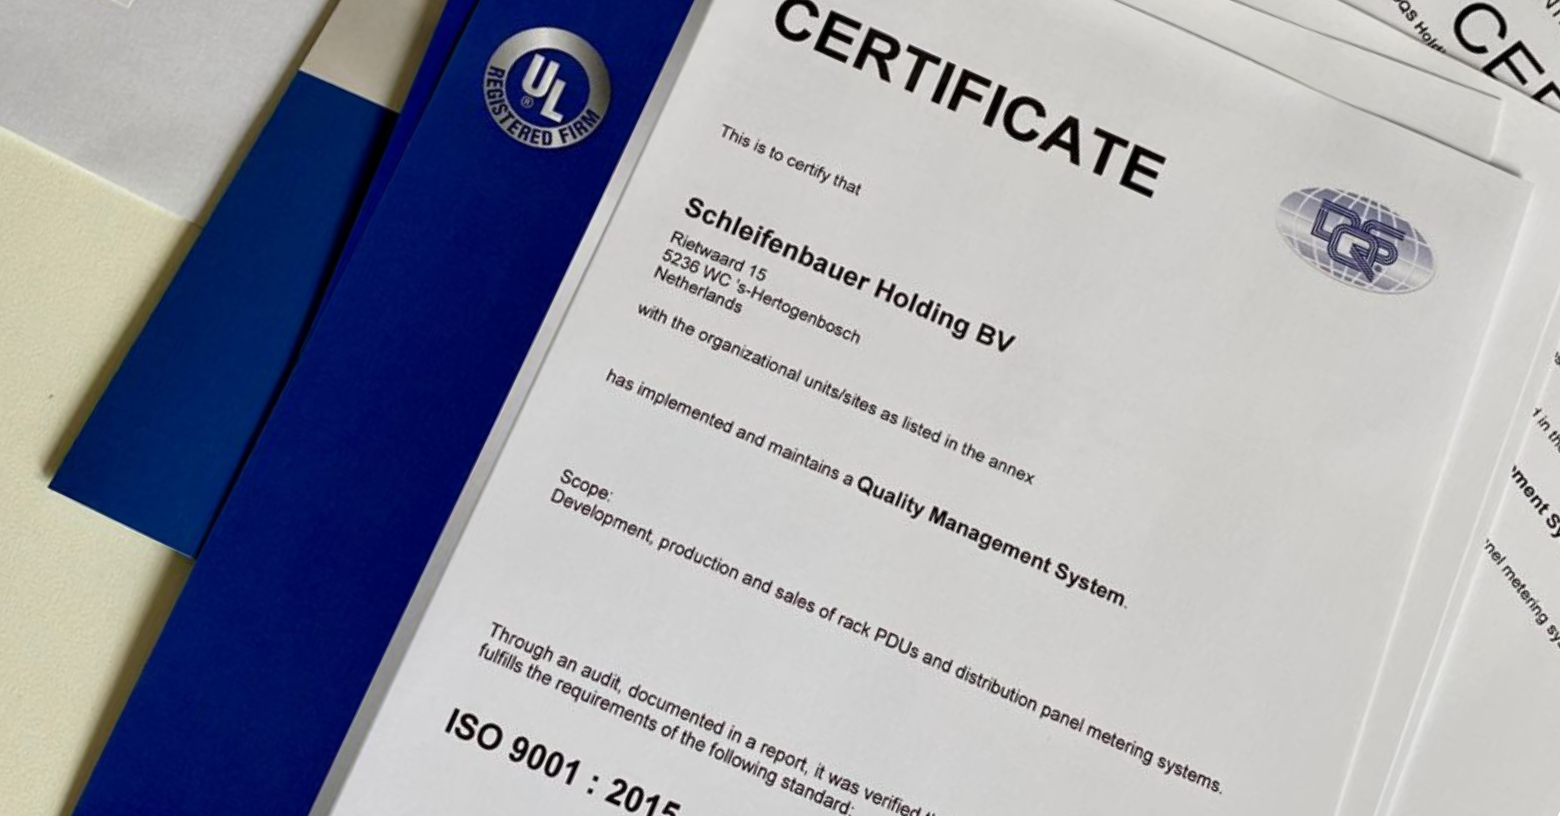 ISO 9001:2015 certificering verlengd voor 3 jaar